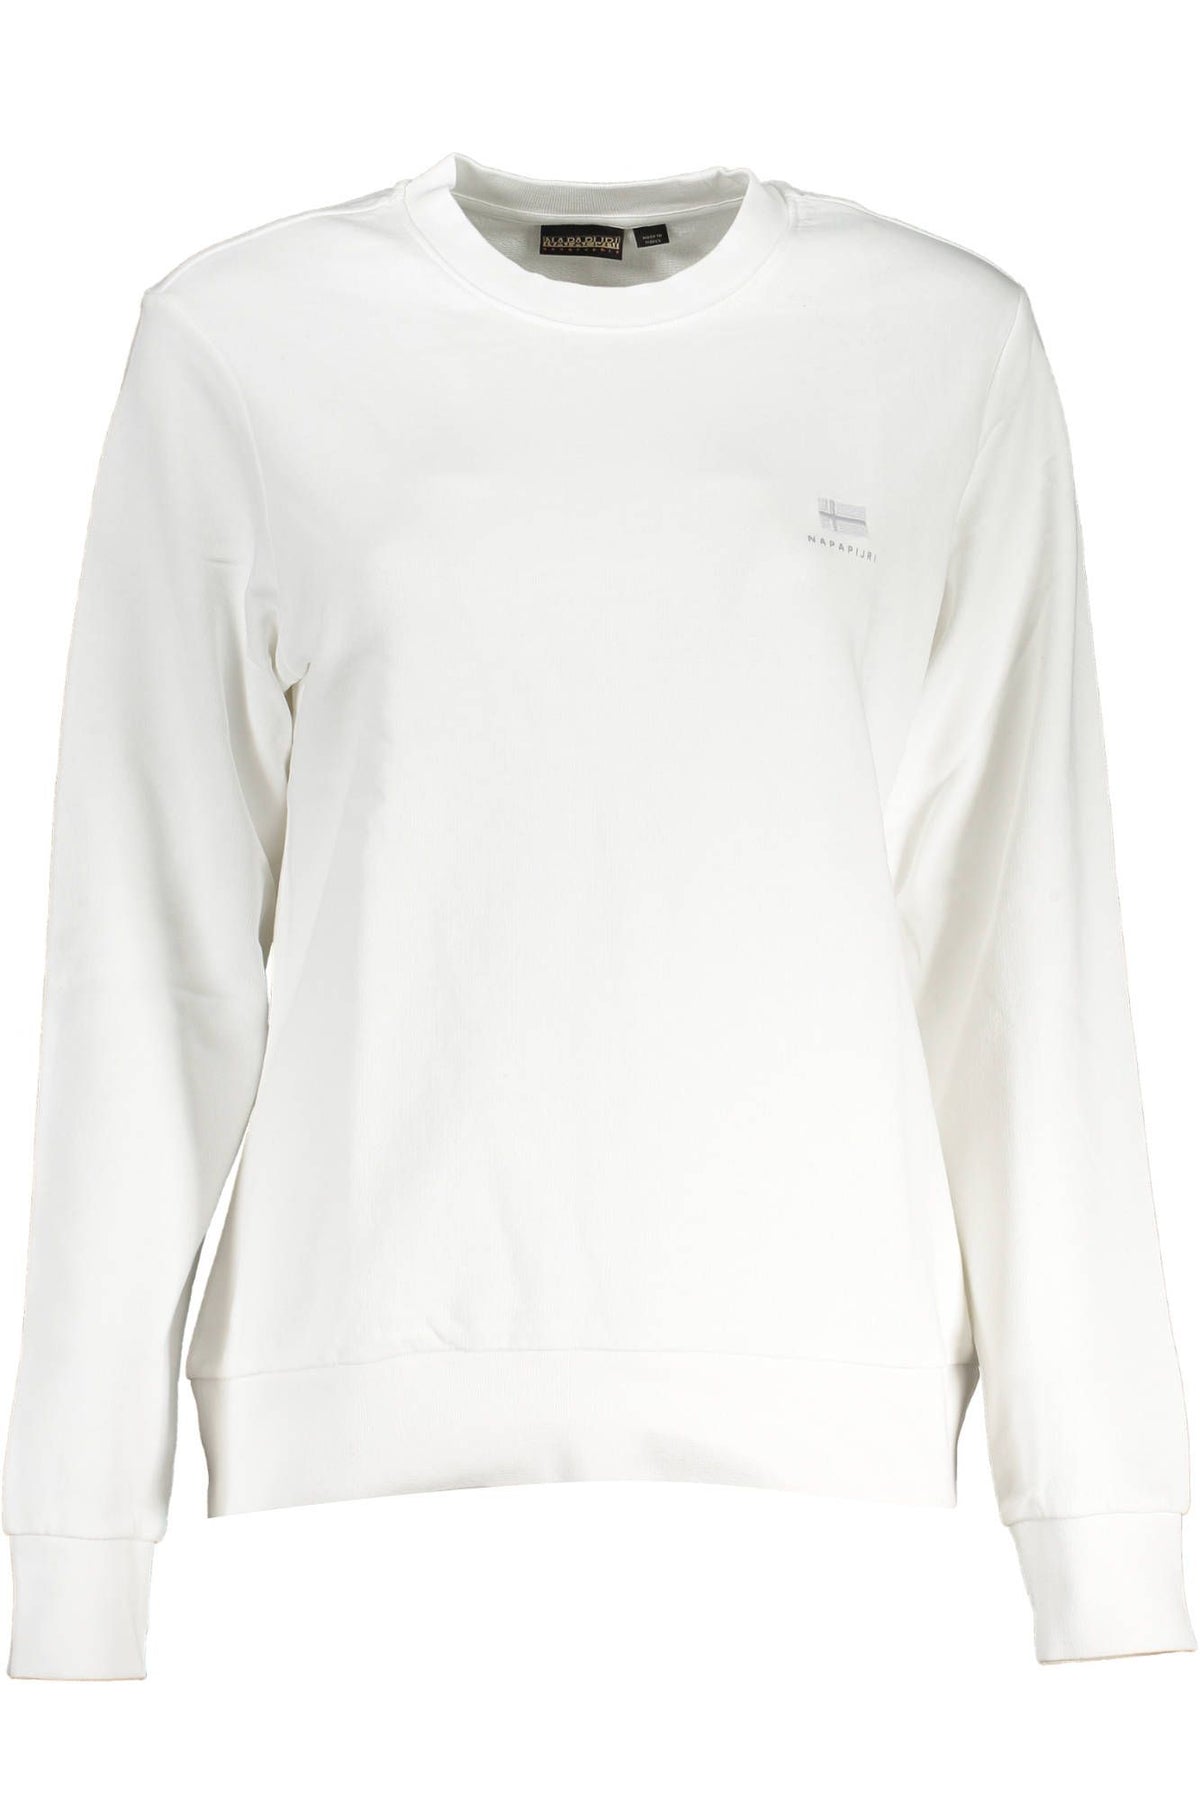 Napapijri Elegantes weißes Sweatshirt mit Rundhalsausschnitt aus Baumwolle